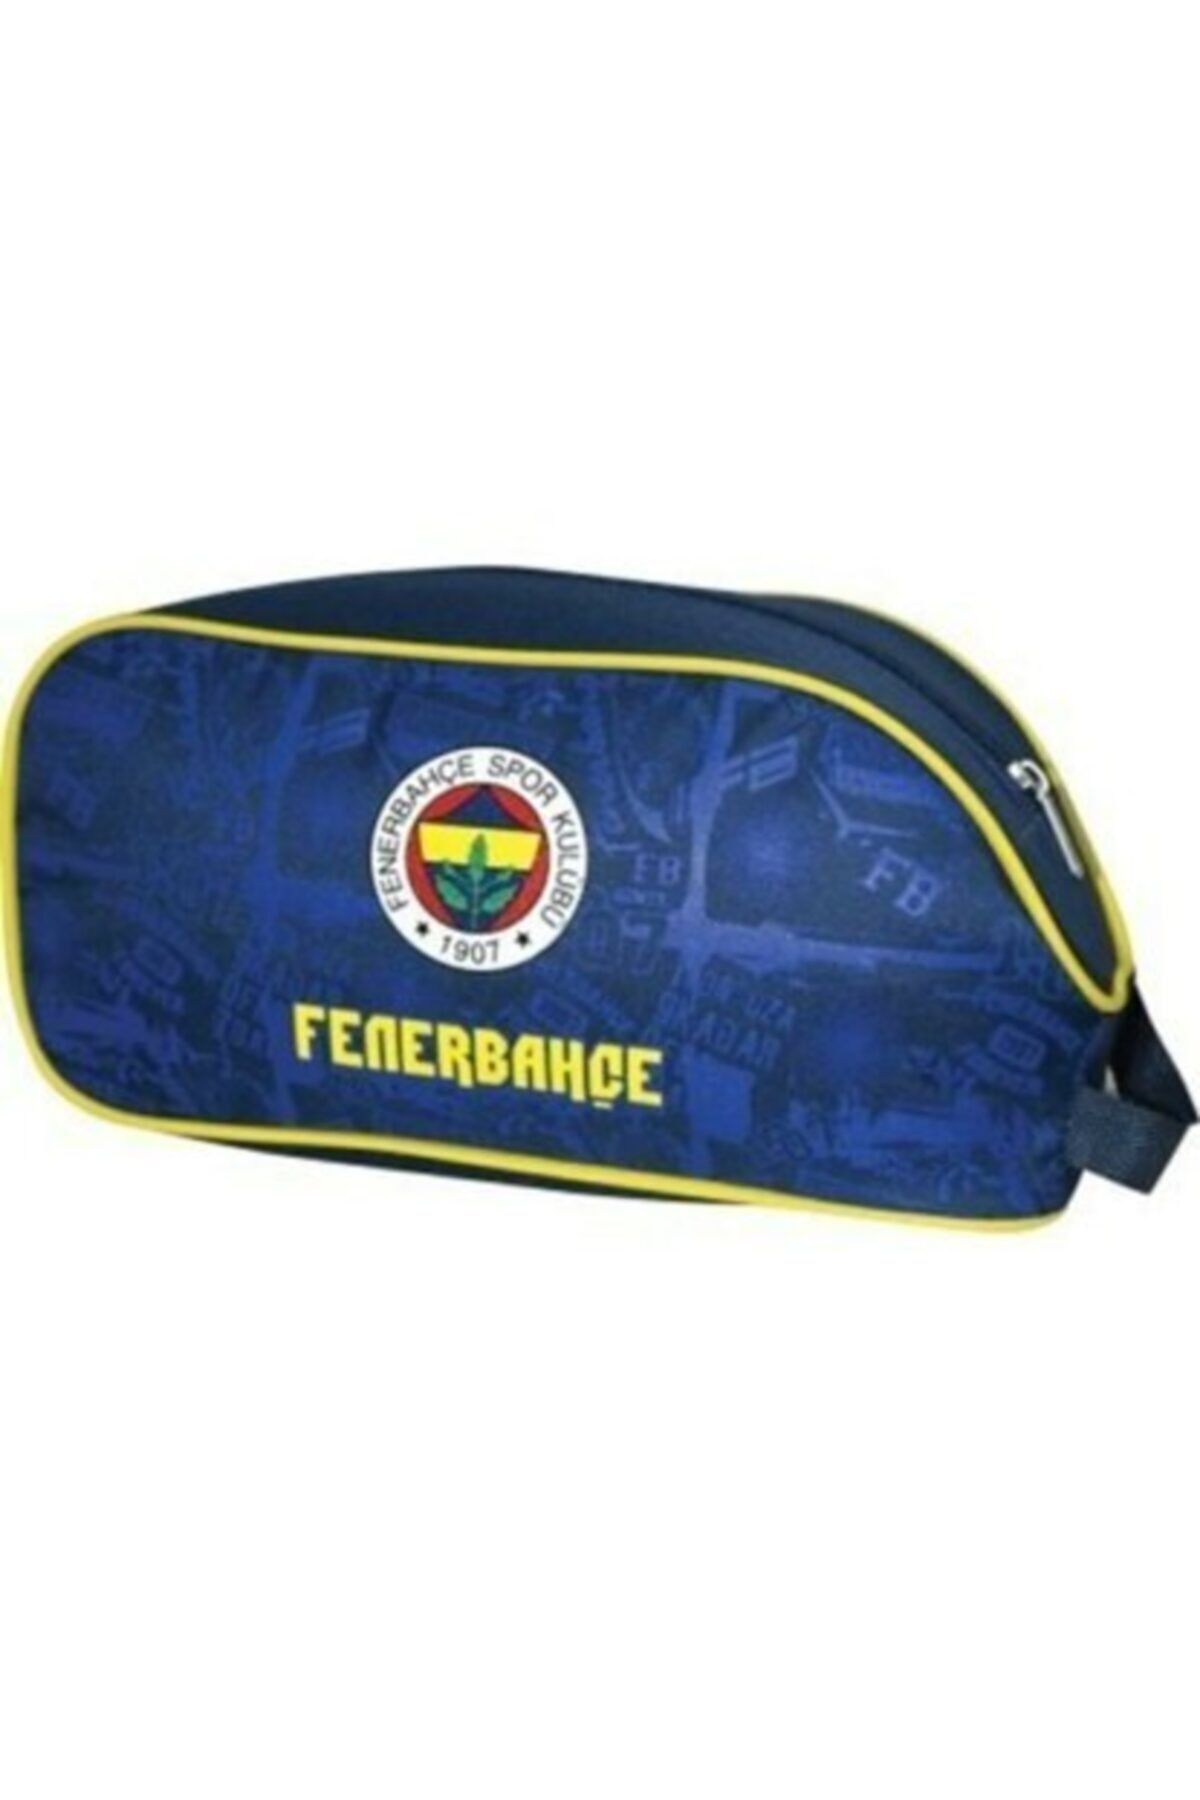 Fenerbahçe Hakan Ayakkabı Çantası Lisanslı